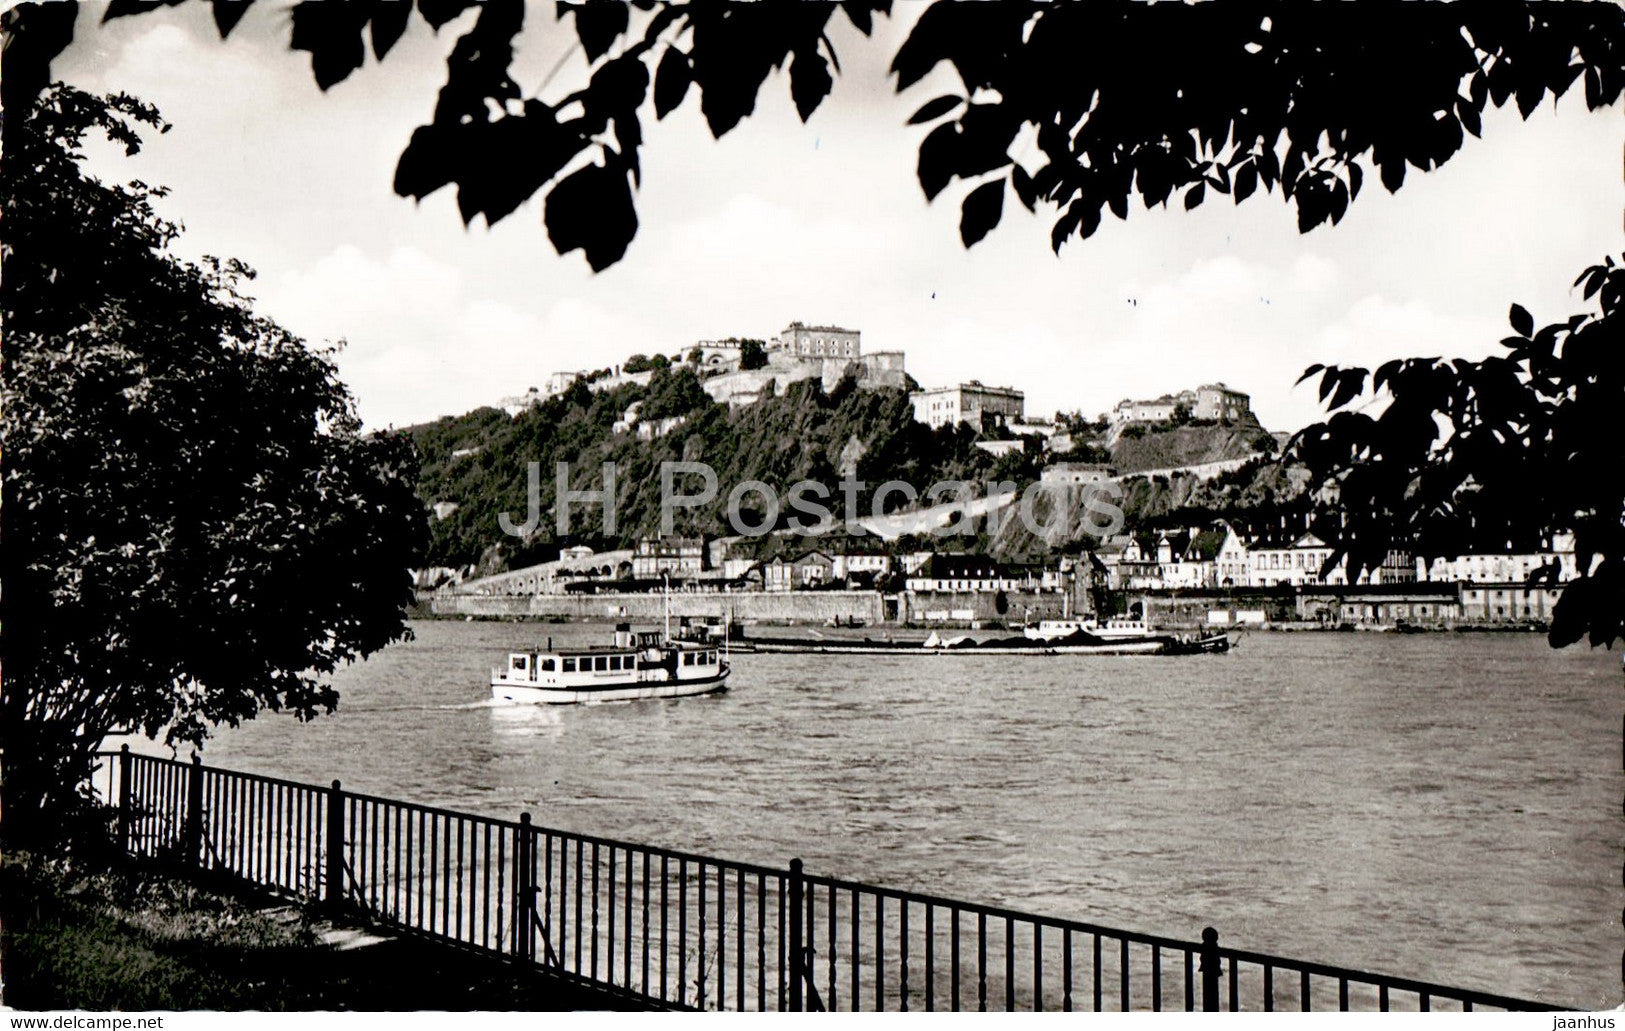 Koblenz am Rhein - Rheinpartie mit Ehrenbreitstein - ship - old postcard - 1958 - Germany - used - JH Postcards